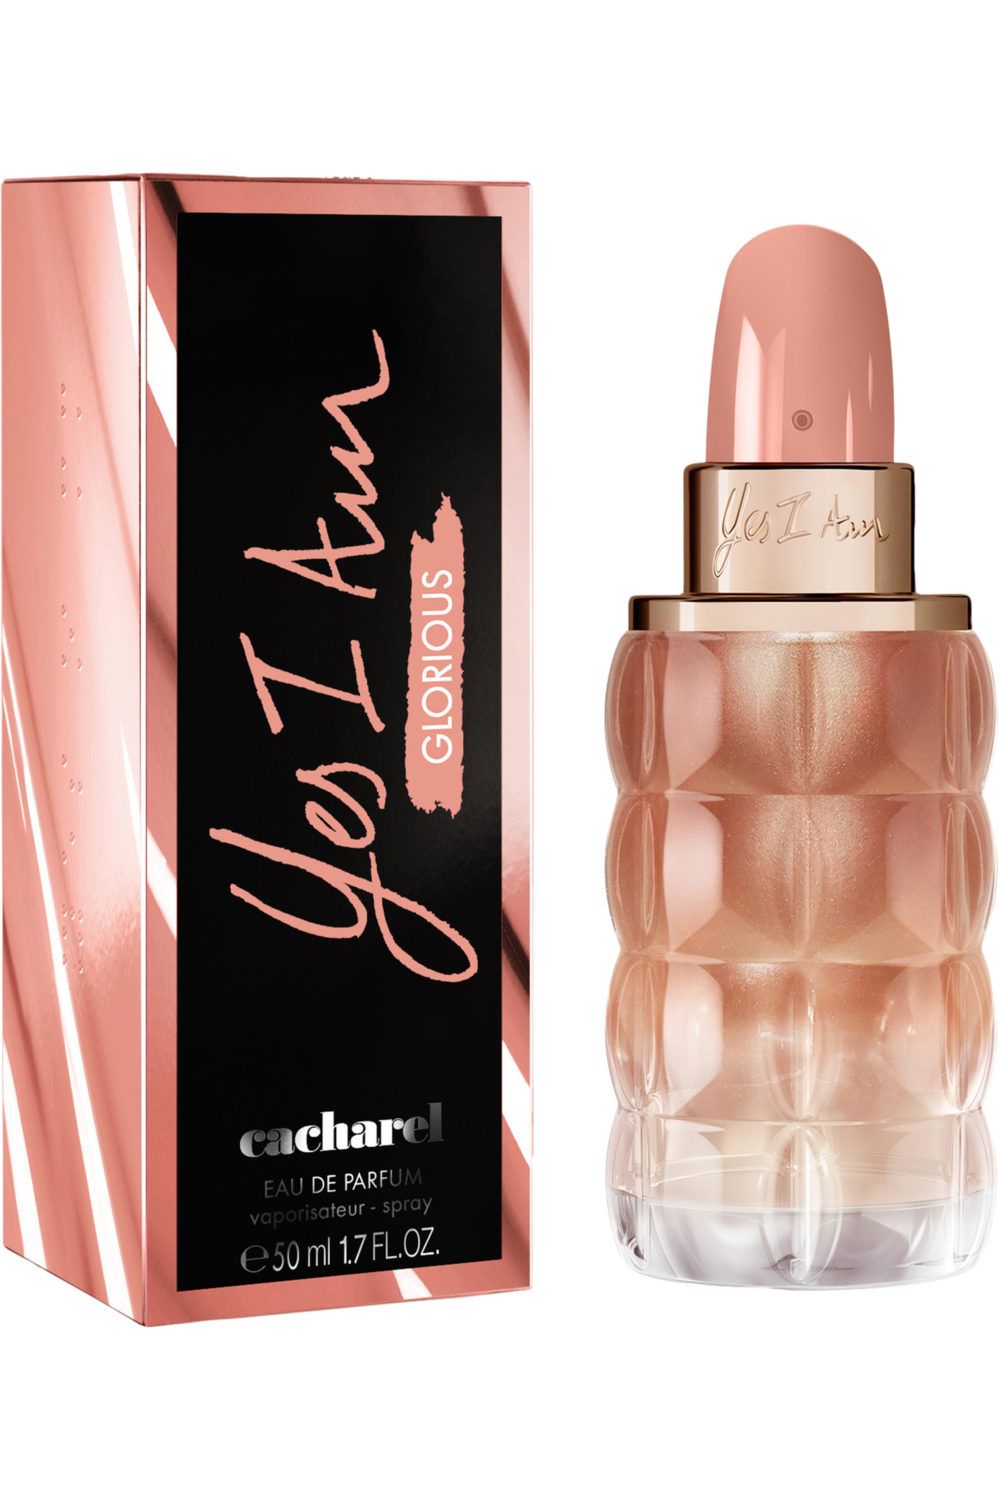 Cacharel - Eau de parfum Yes I Am Glorious 50 ml